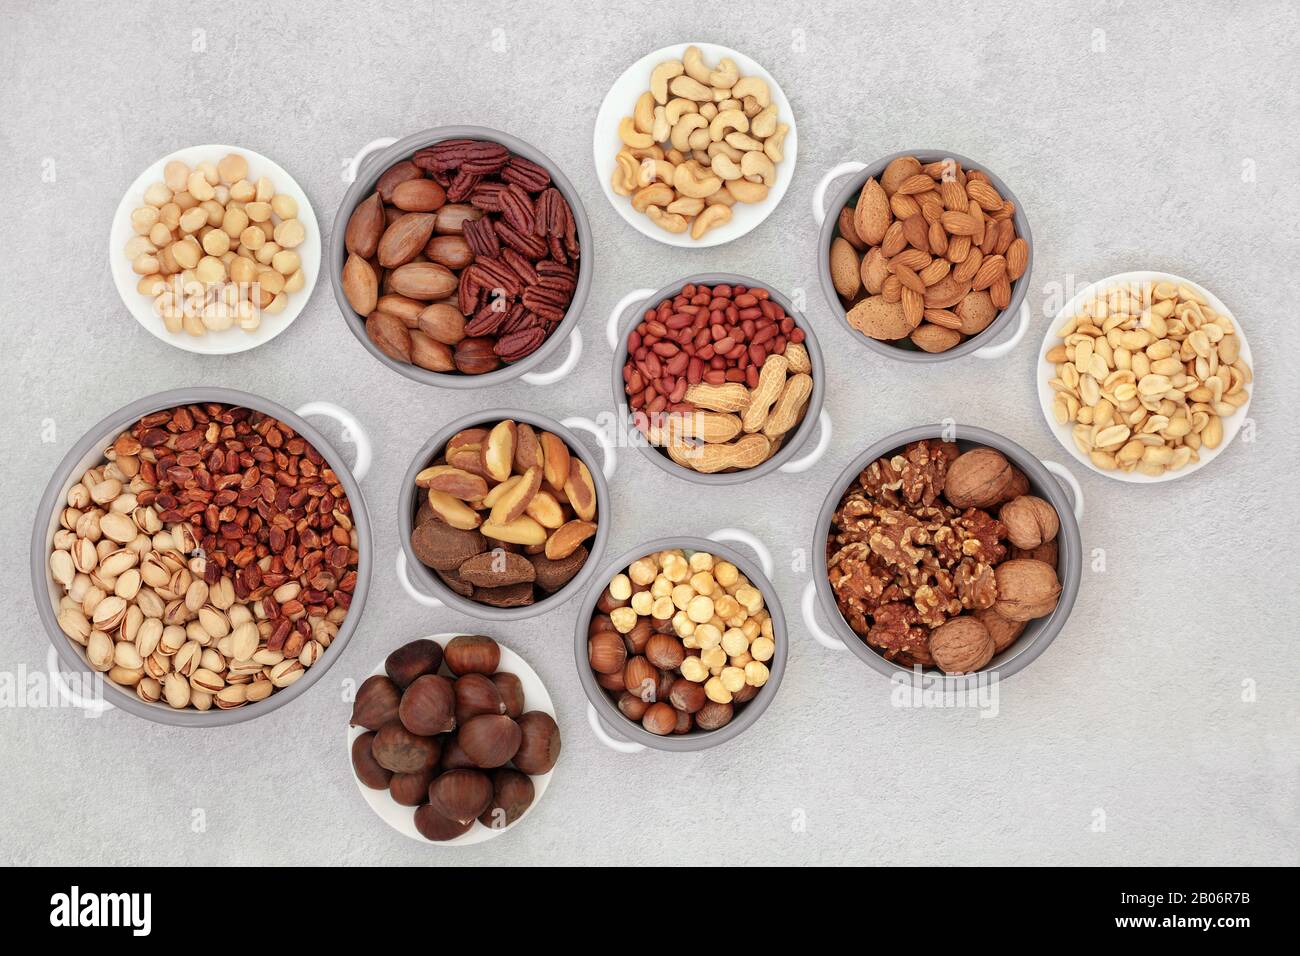 La collection de fruits secs pour la santé des noix convient à un régime végétalien et végétarien élevé en protéines, oméga 3, antioxydants, minéraux et vitamines. Pose à plat Banque D'Images